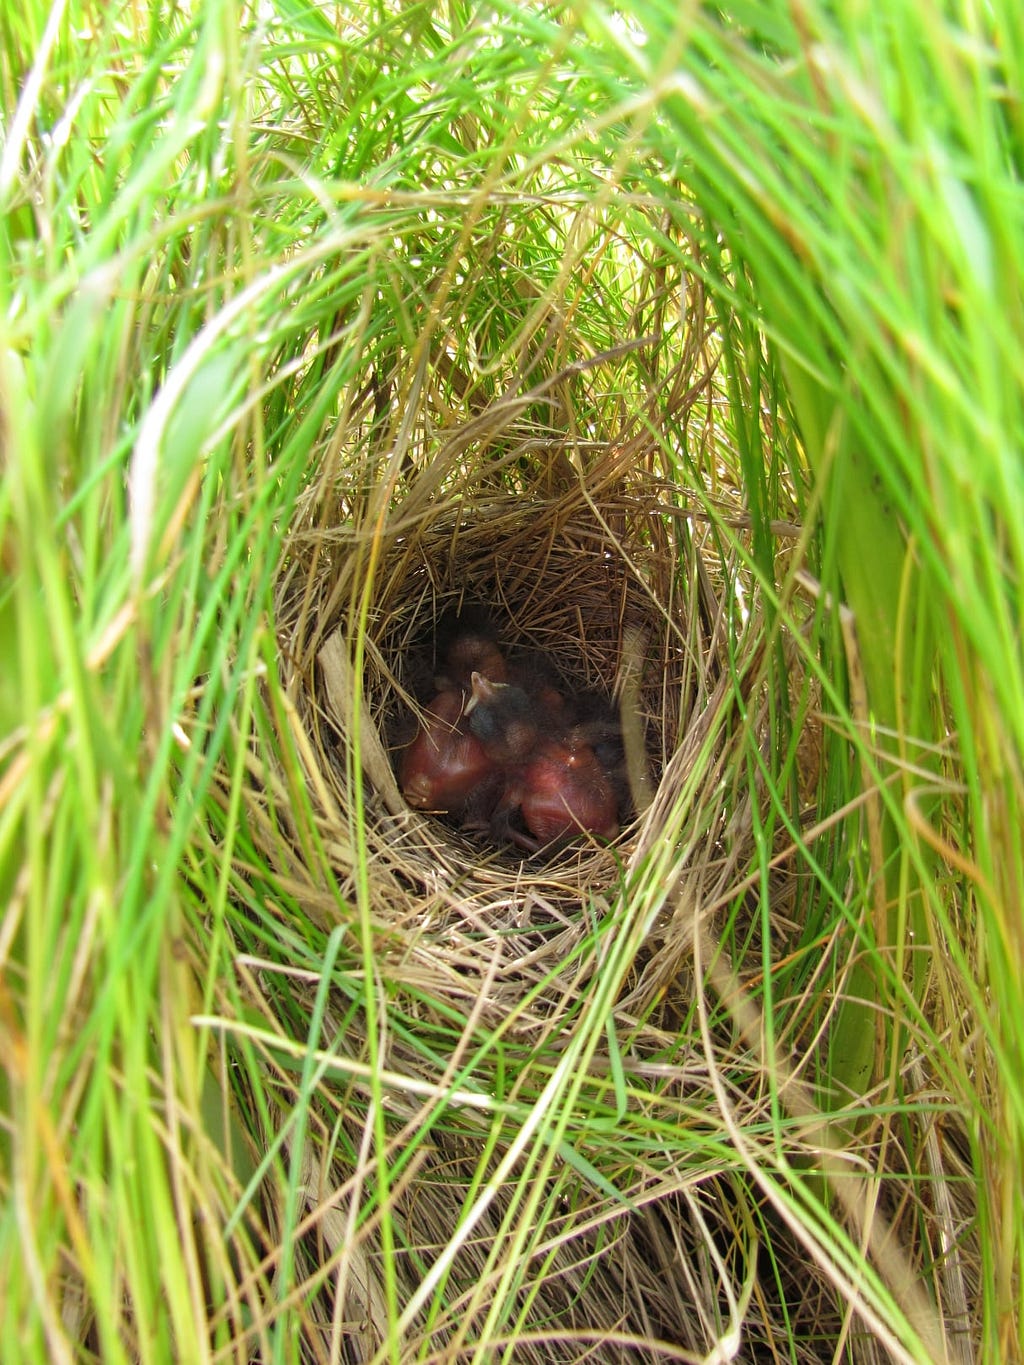 Salmarsh sparrow nest in salt hay